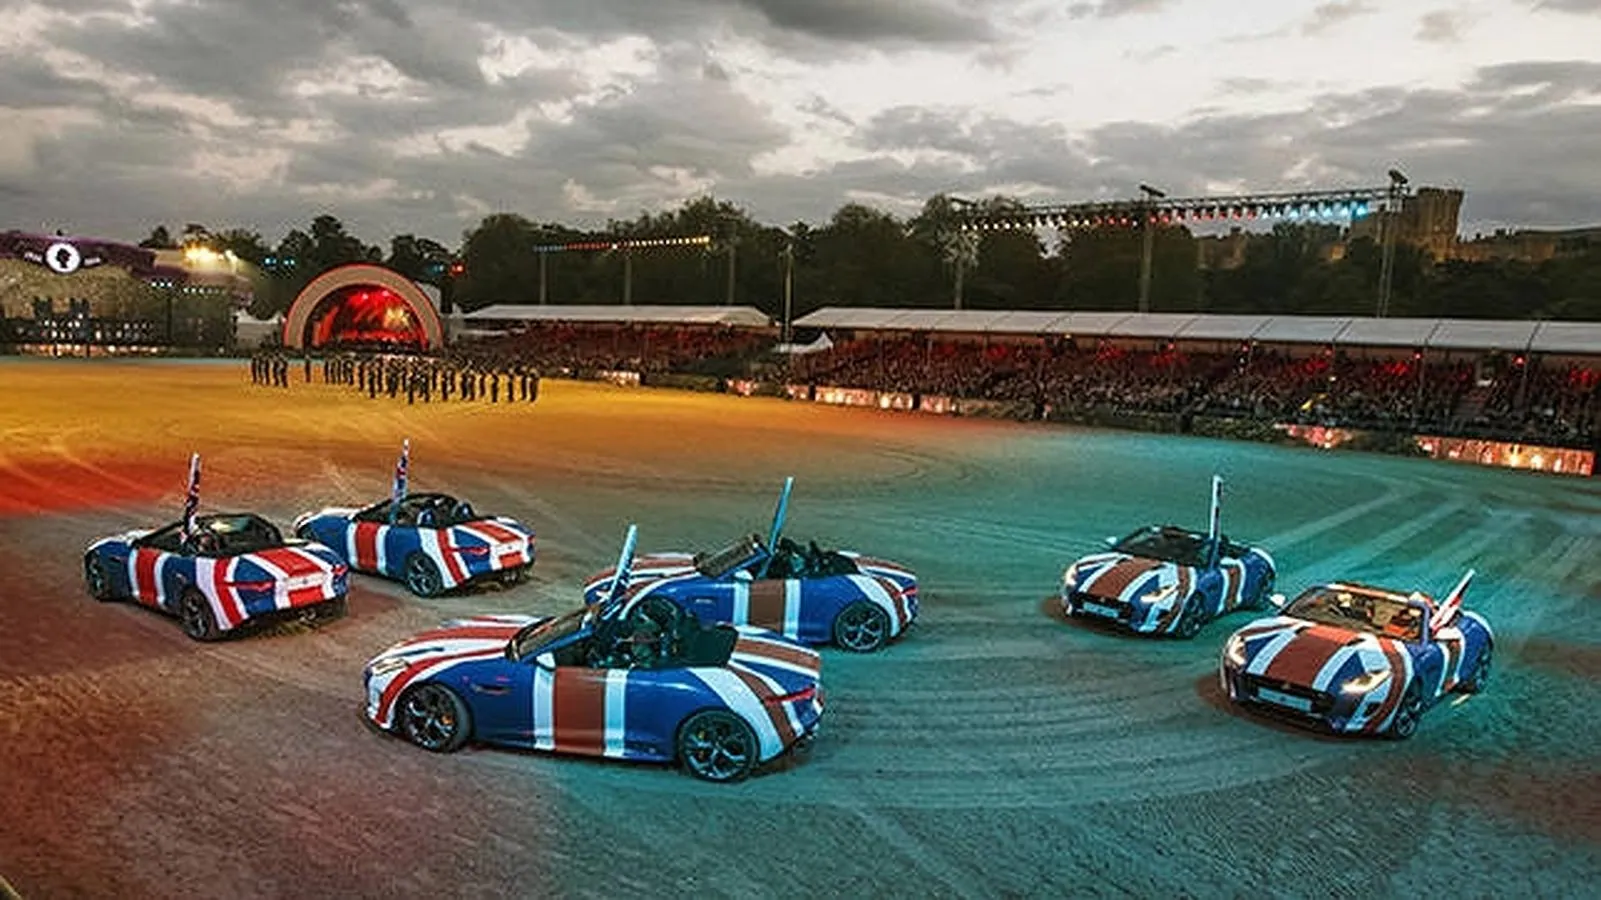 Jaguar F-TYPE decorados con la bandera británica